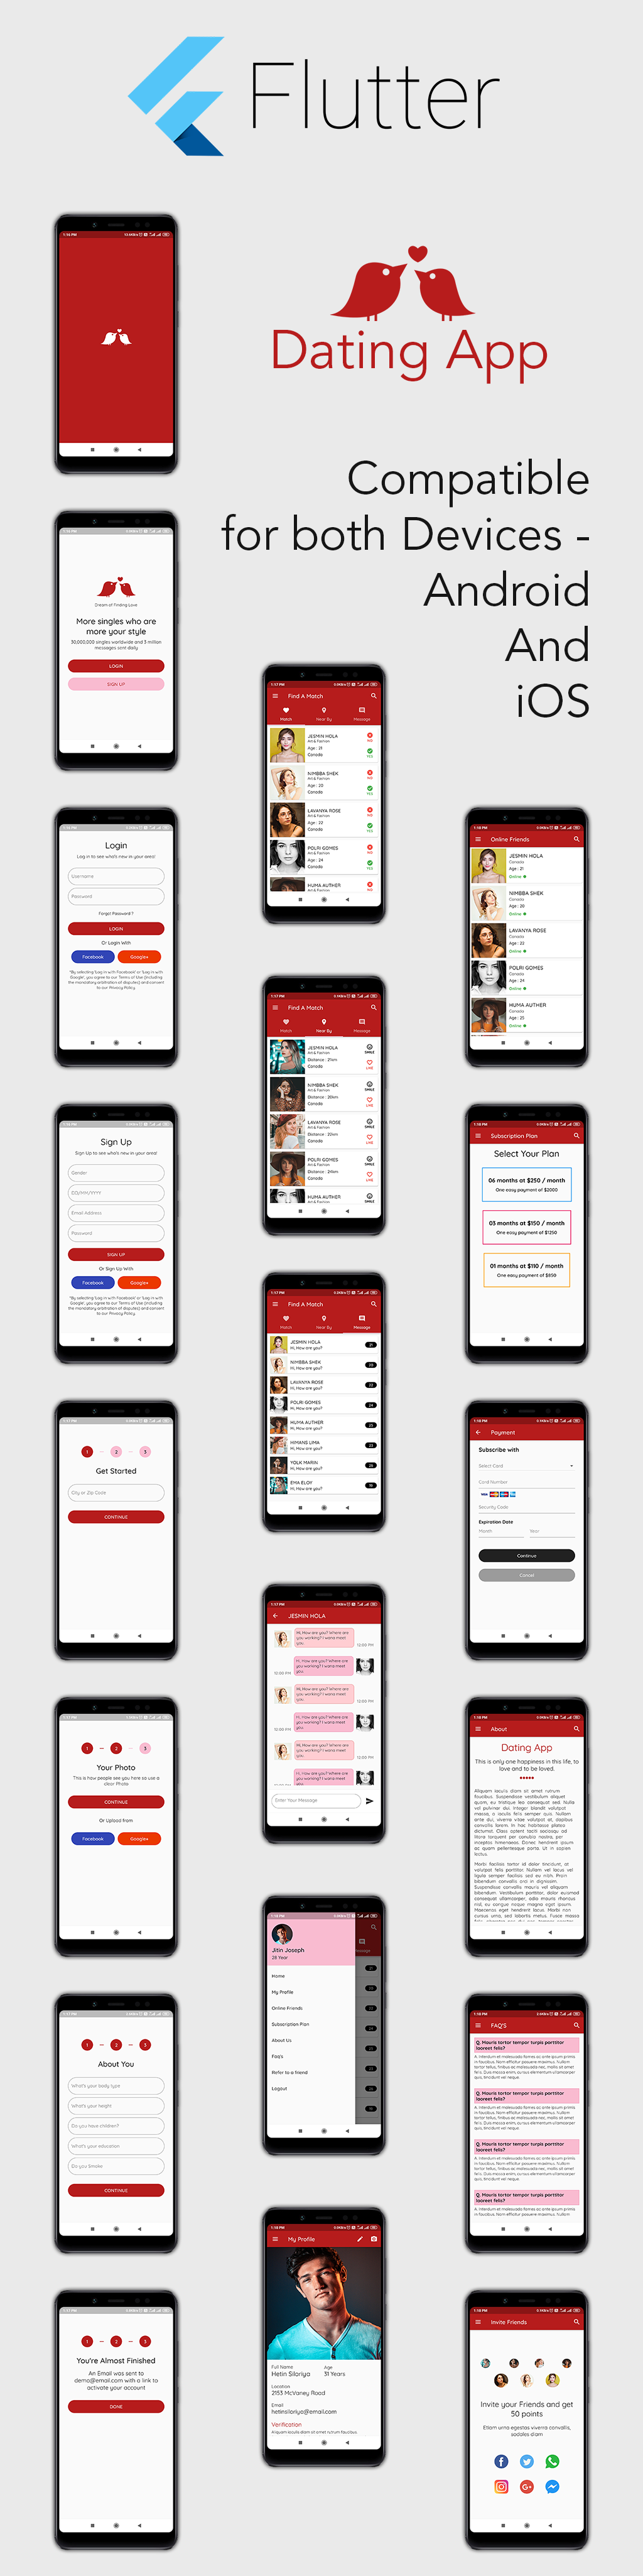 Dating App - Flutter Mobile UI - 2